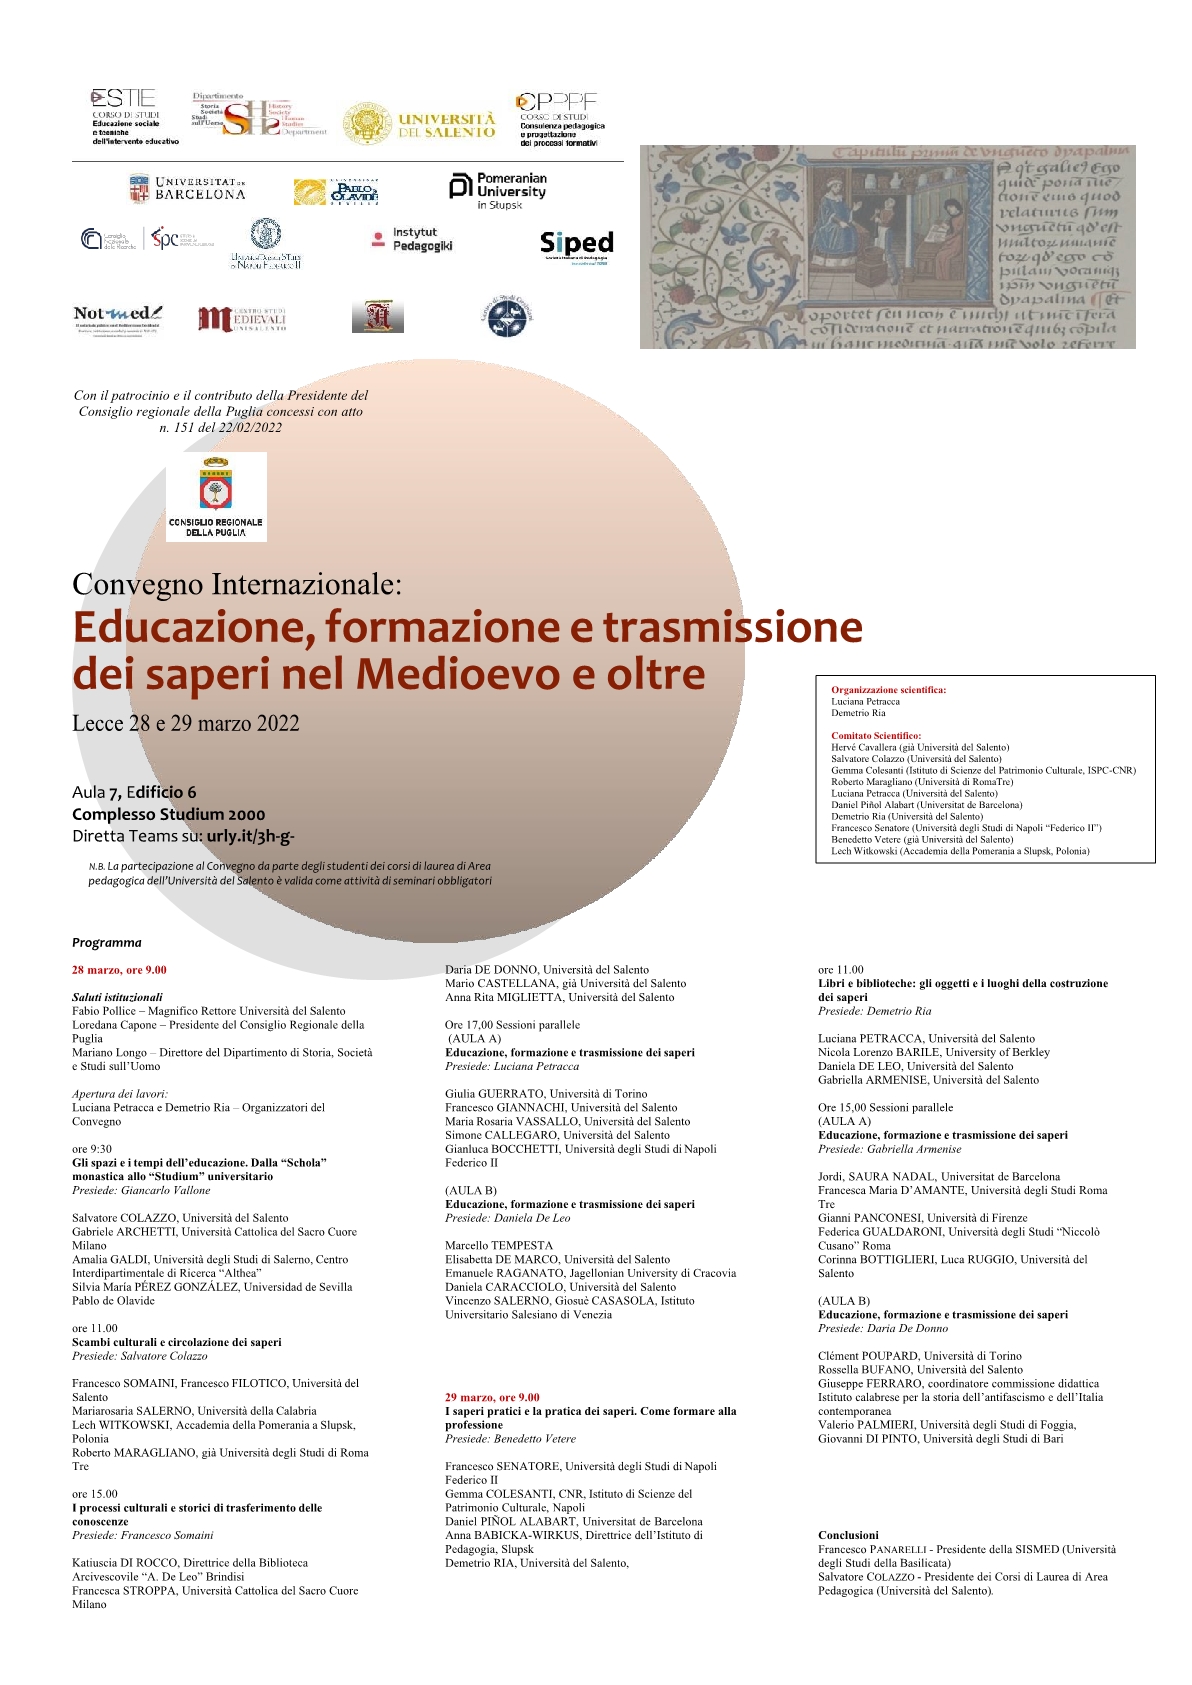 Educazione, formazione e trasmissione dei saperi nel Medioevo e oltre. Al convegno internazionale di Lecce anche l’Icsaic